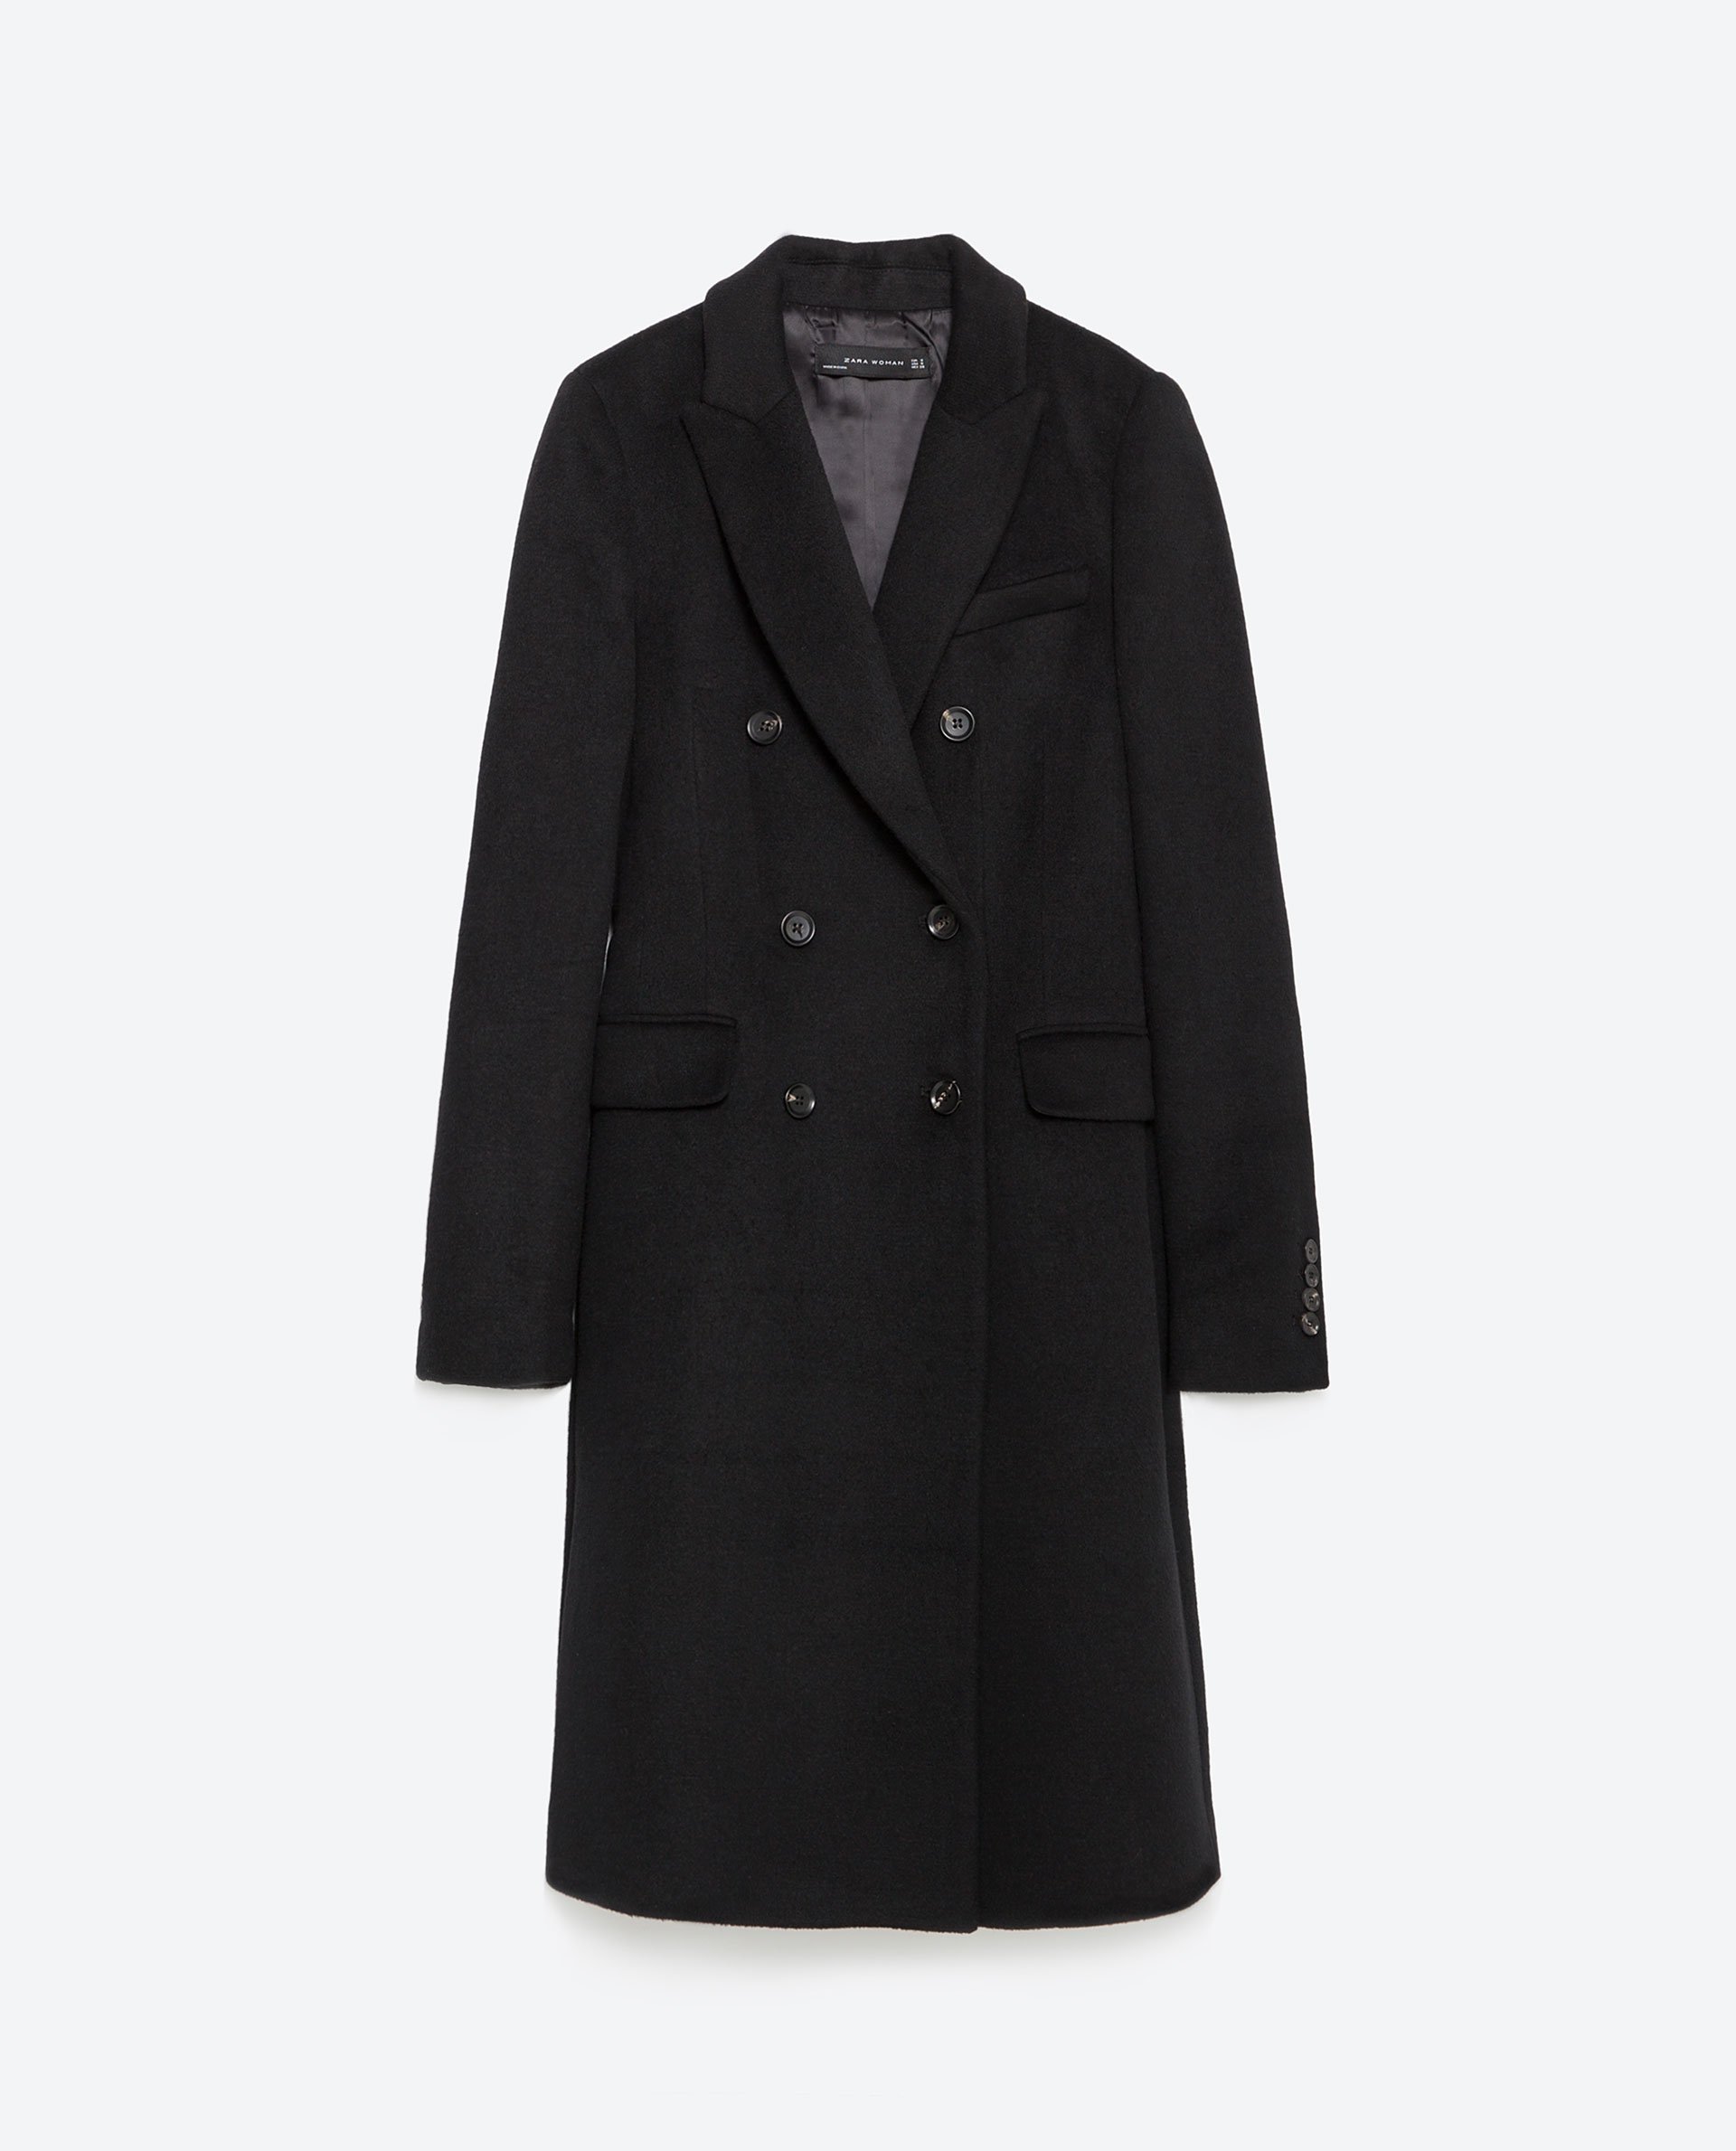 Zara Double Breasted Lapel Coat in Black | Lyst